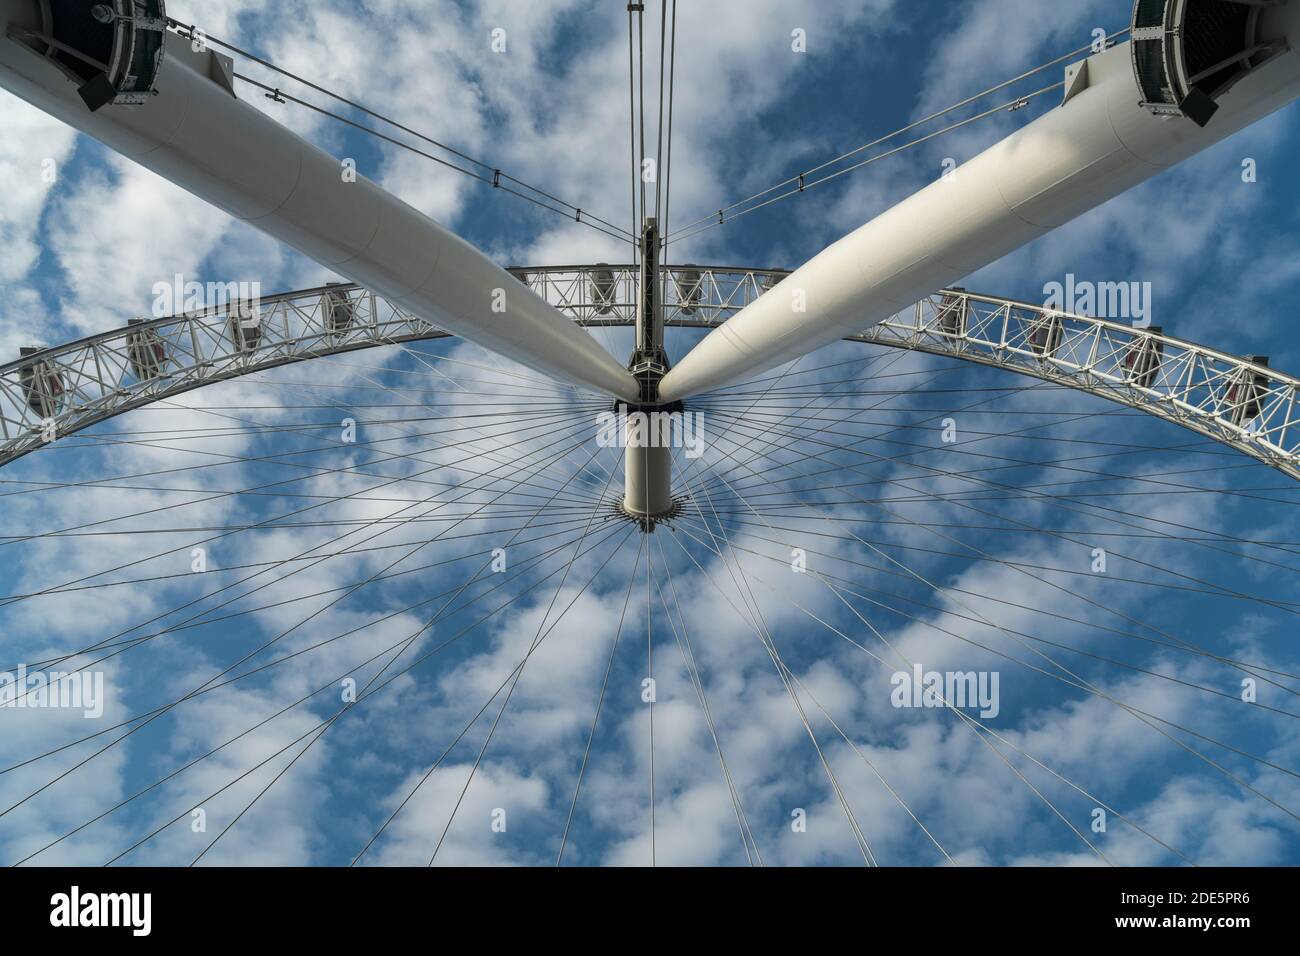 Das London Eye, Wolken und blauer Himmel, das ikonische Gebäude und die berühmte Touristenattraktion, stationär aufgrund der Schließung in der Covid-19 Coronavirus Pandemie Sperre, England, Europa Stockfoto